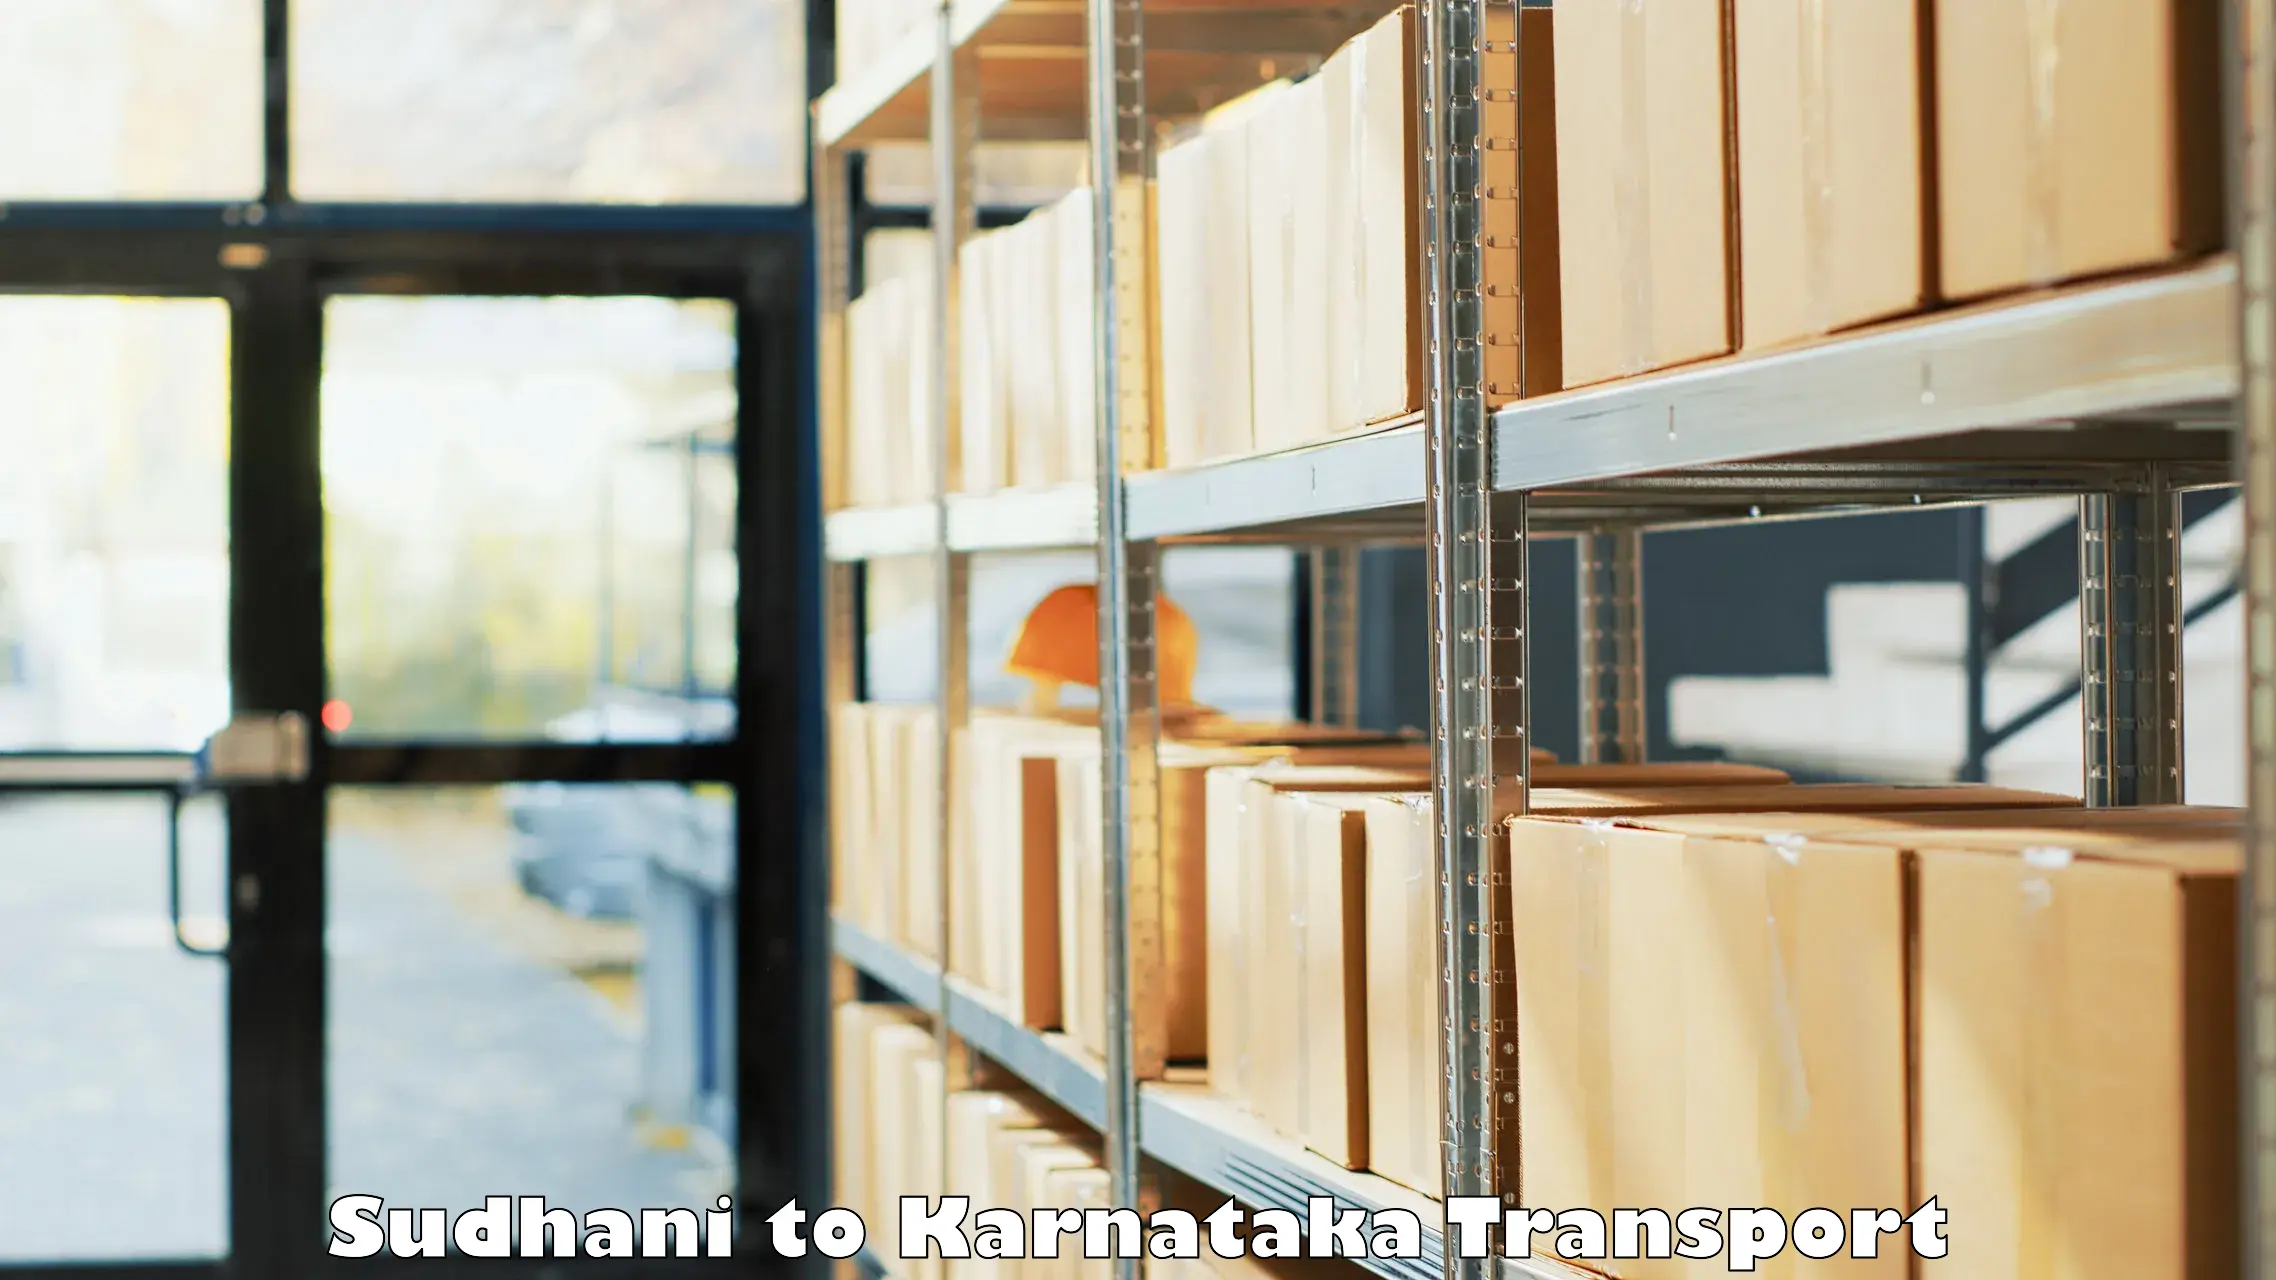 Furniture transport service Sudhani to Karwar